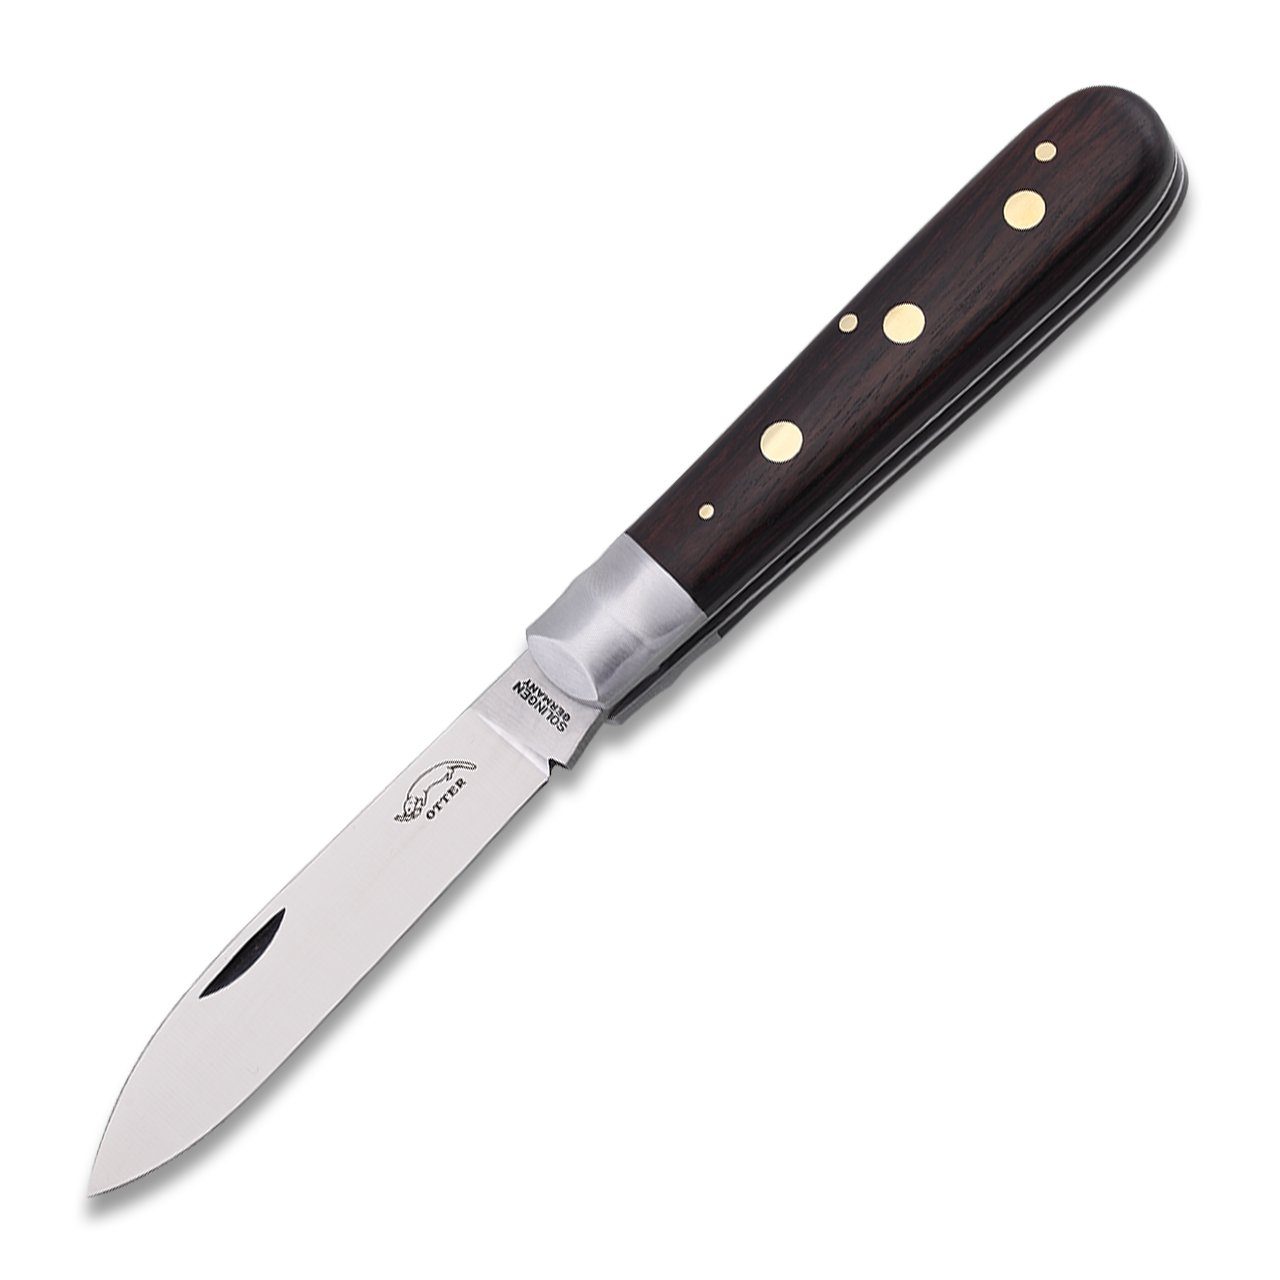 Otter Messer Taschenmesser Drei-Nieten-Messer Grenadill Klinge Carbonstahl, nicht rostfrei, Messingnieten, Slipjoint